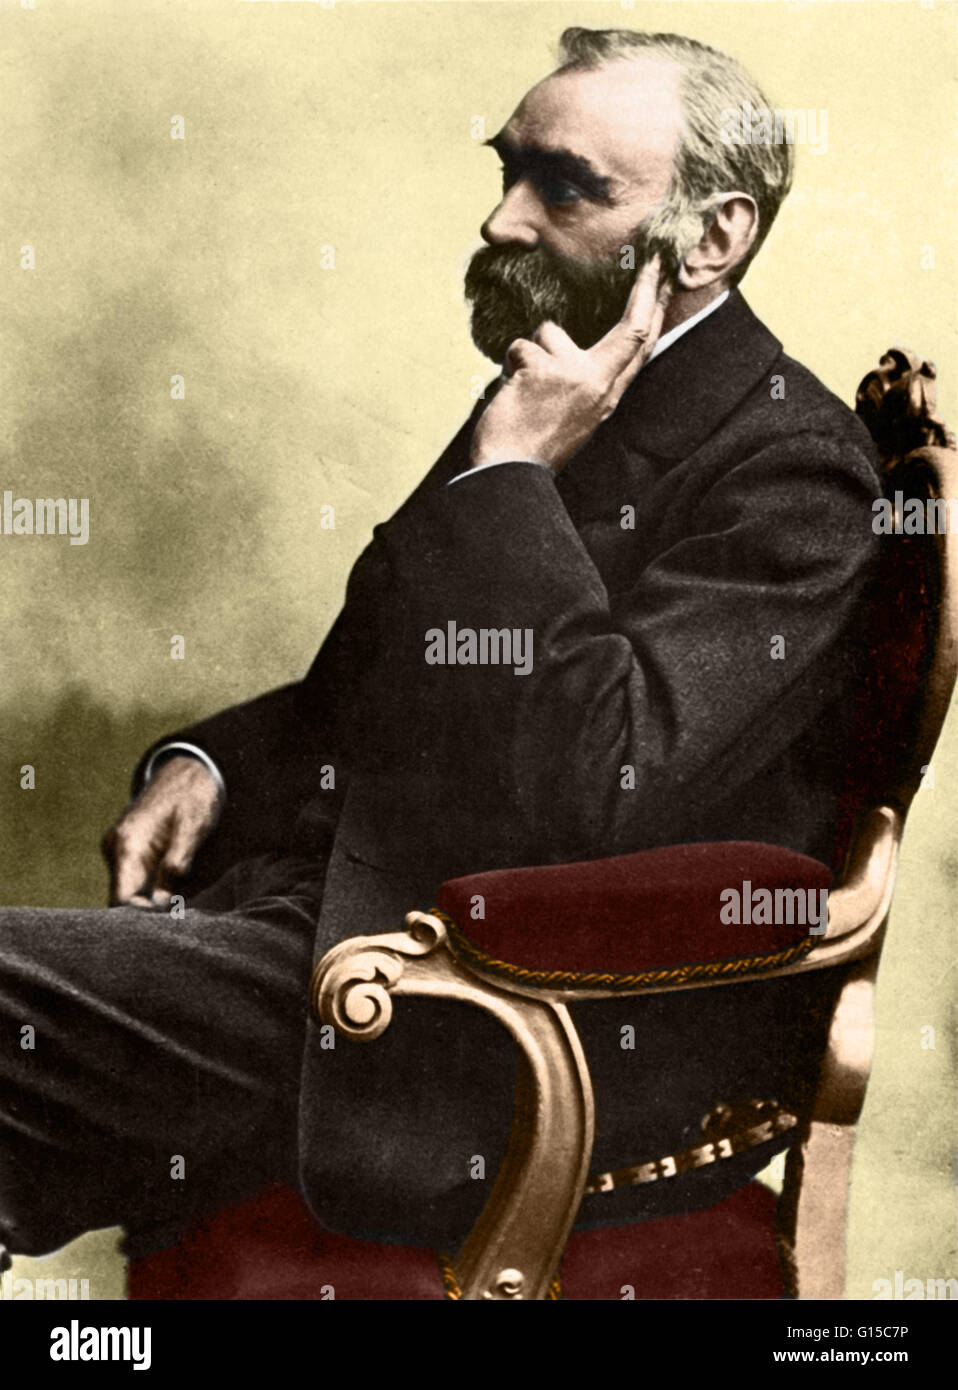 Alfred Bernhard Nobel (21. Oktober 1833 - 10. Dezember 1896) war ein schwedischer Chemiker und Erfinder, trat sein Vater im Geschäft der Herstellung von Sprengstoffen. Er studierte Sprengstoffe wie Nitroglycerin und entdeckte Möglichkeiten, um sie sicherer zu nutzen. In 186 Stockfoto